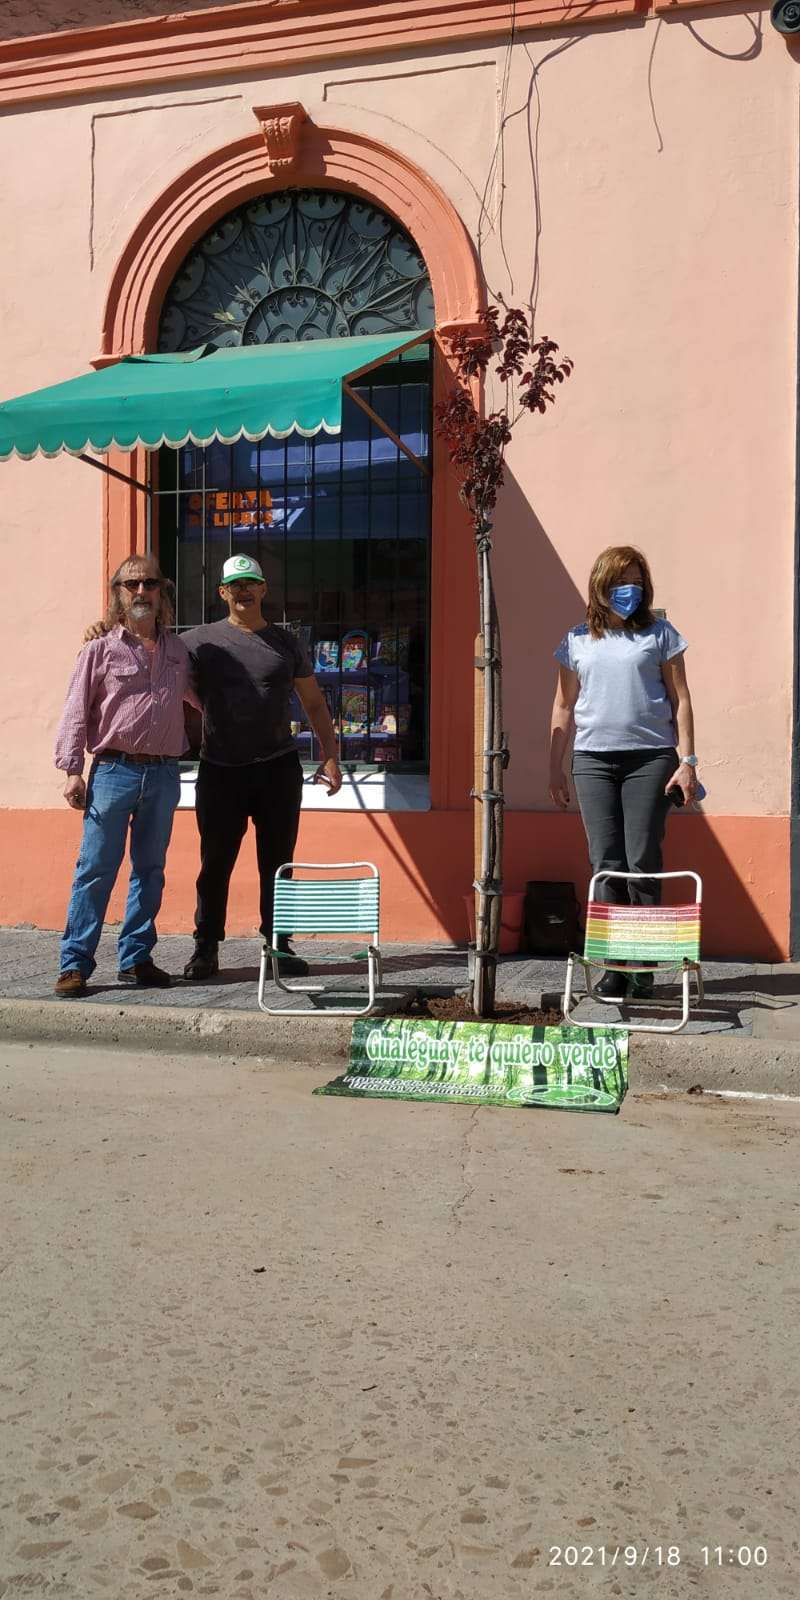 Gualeguay te quiero verde continúa en campaña para forestar la ciudad